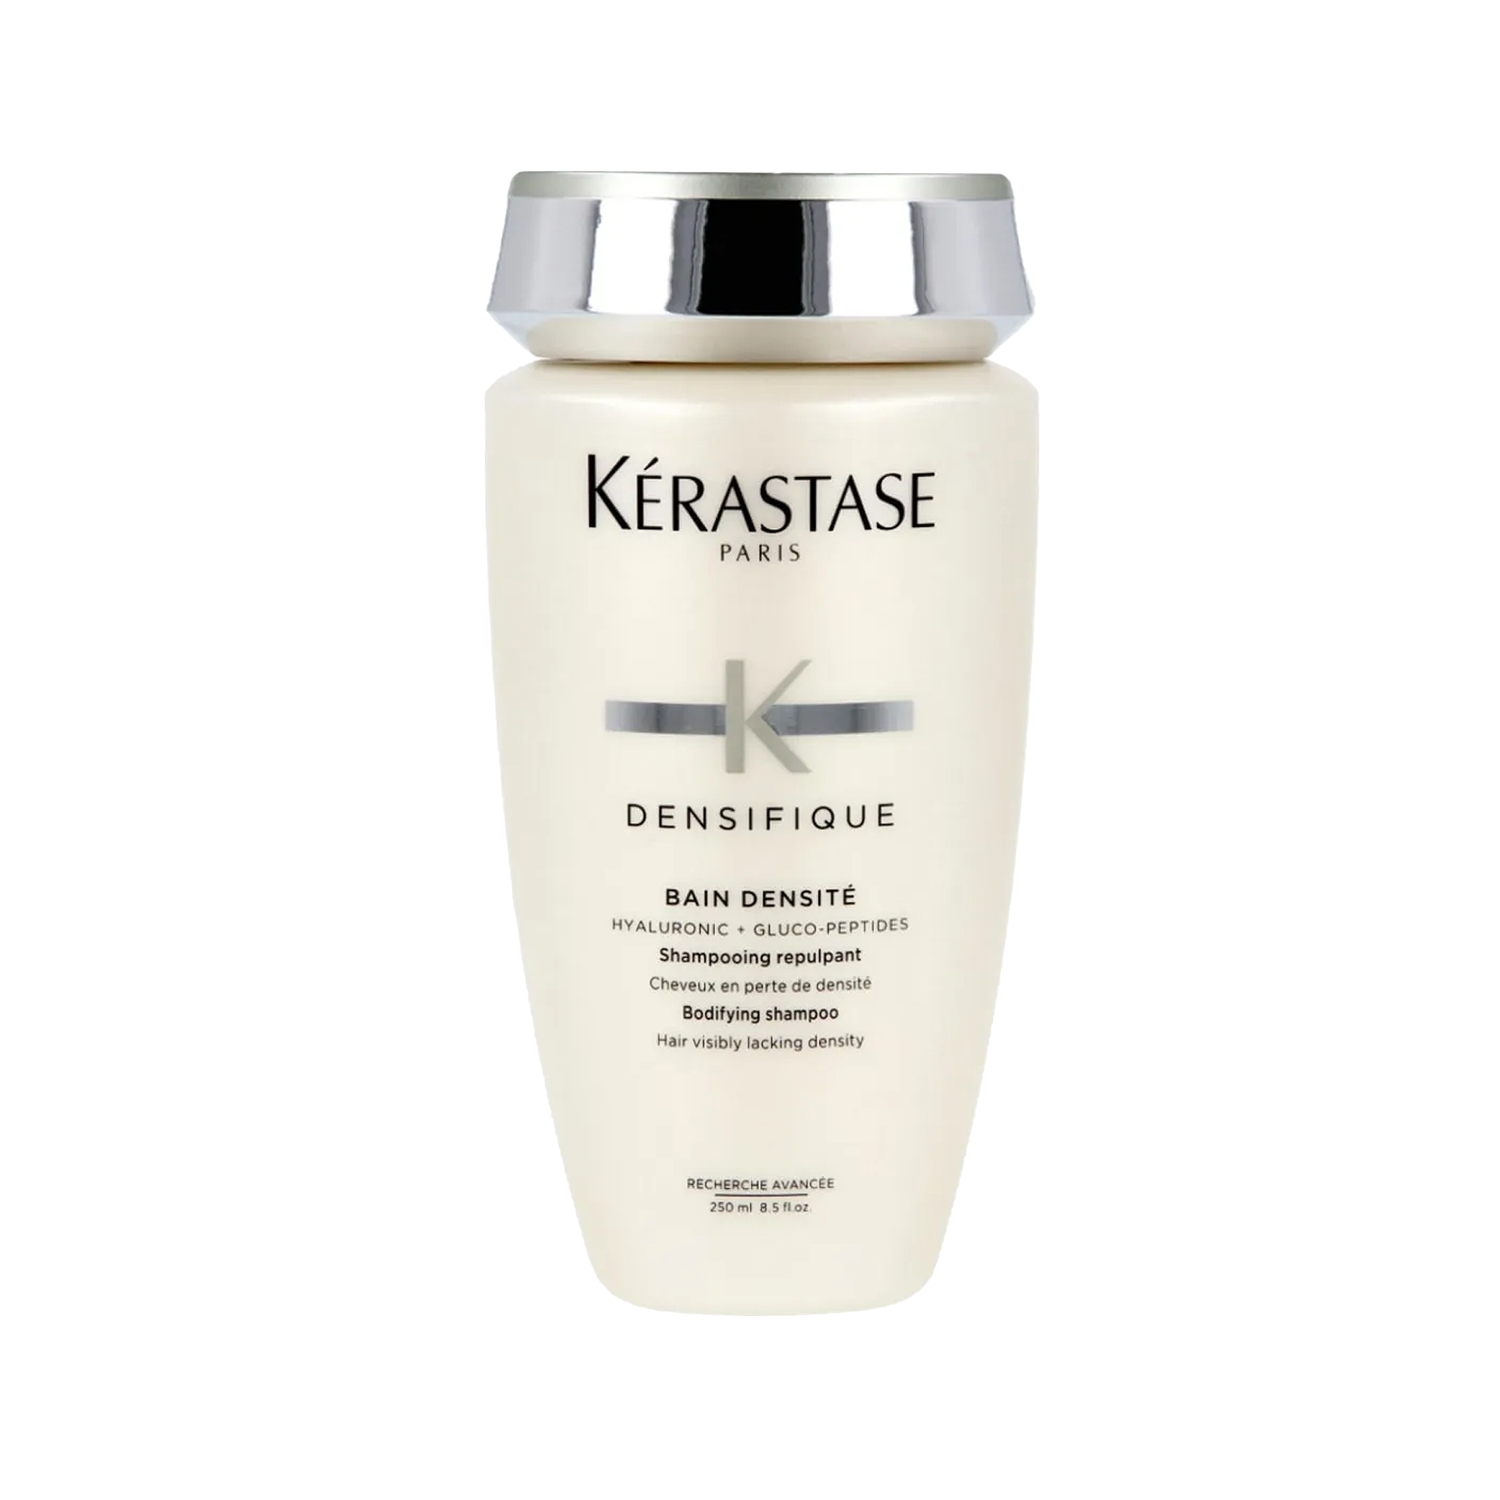 Kerastase Densifique Yoğunlaştırıcı Bakım Kürü 30x6 ml + Bain Densite Şampuan 250 ml